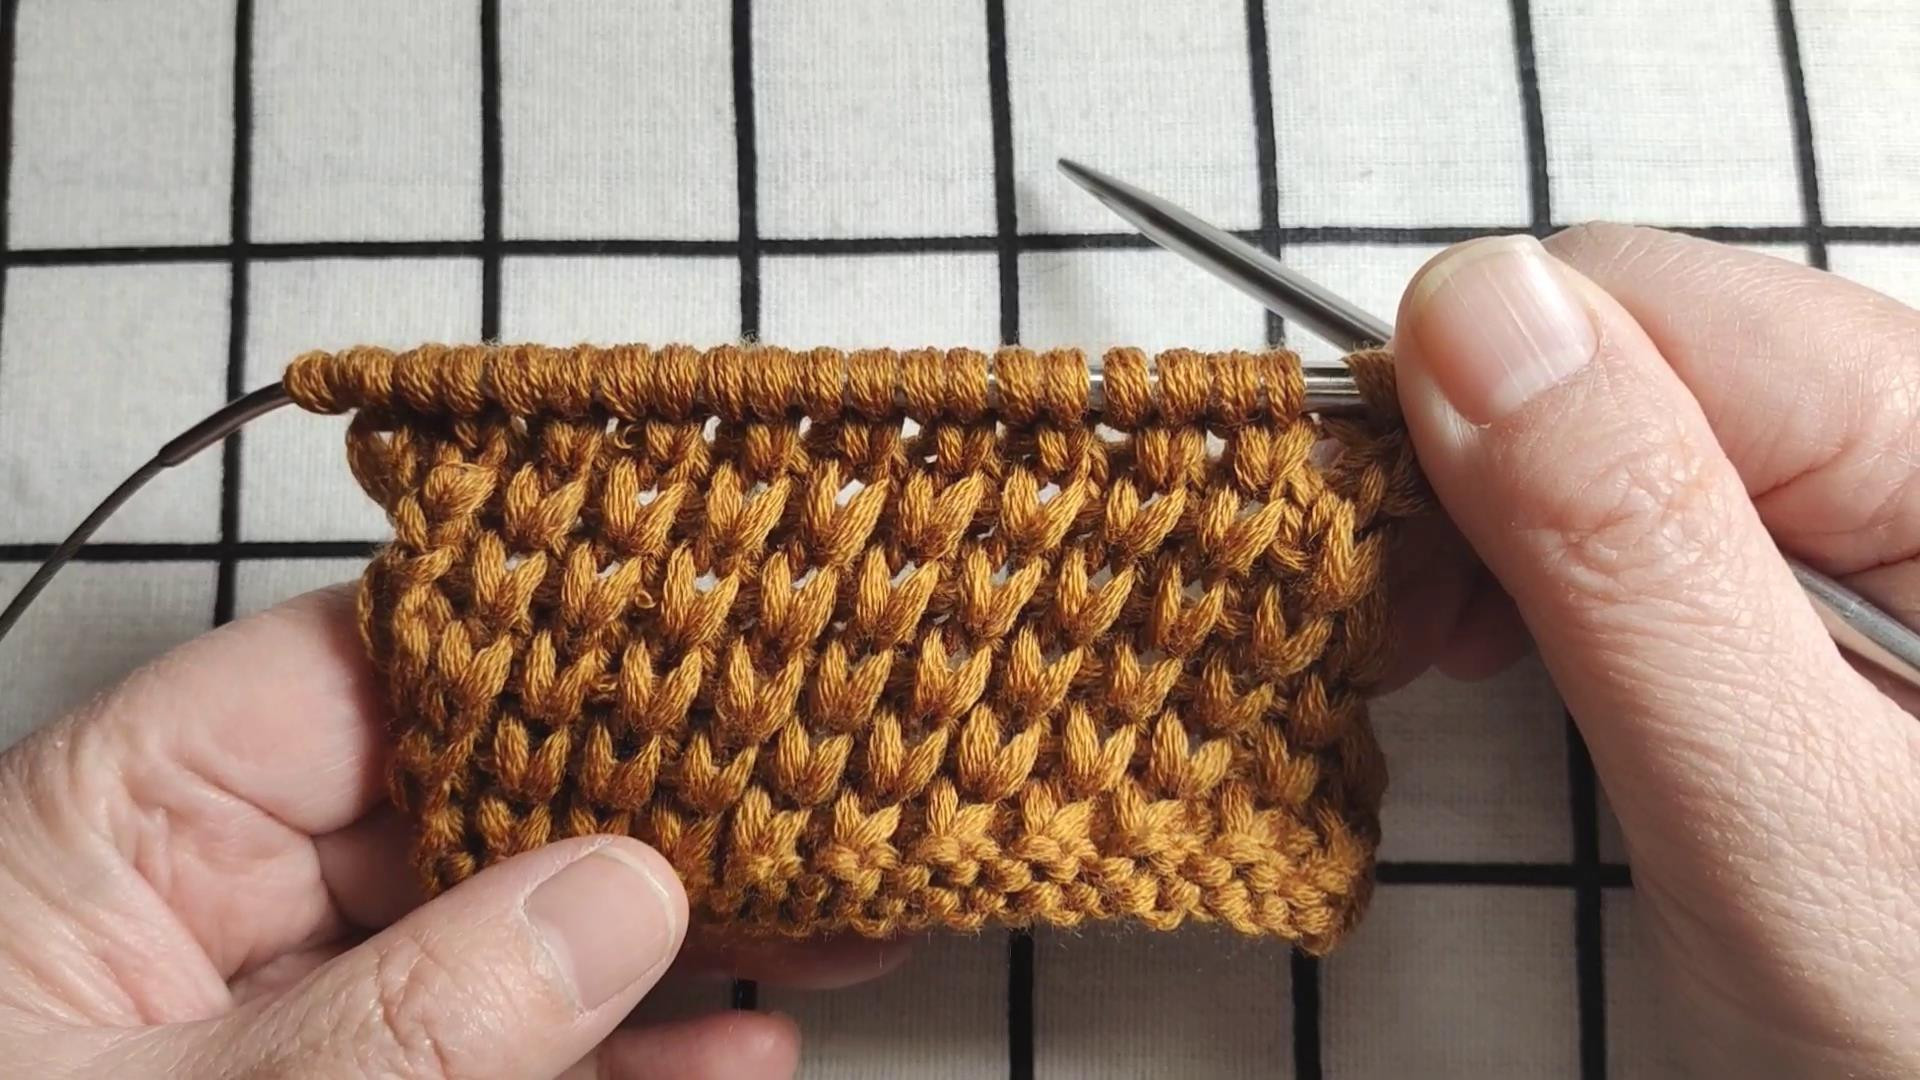 斜纹绞花编织教程，花型厚实平整保暖性好，适合编织冬季棒针毛衣图解和视频